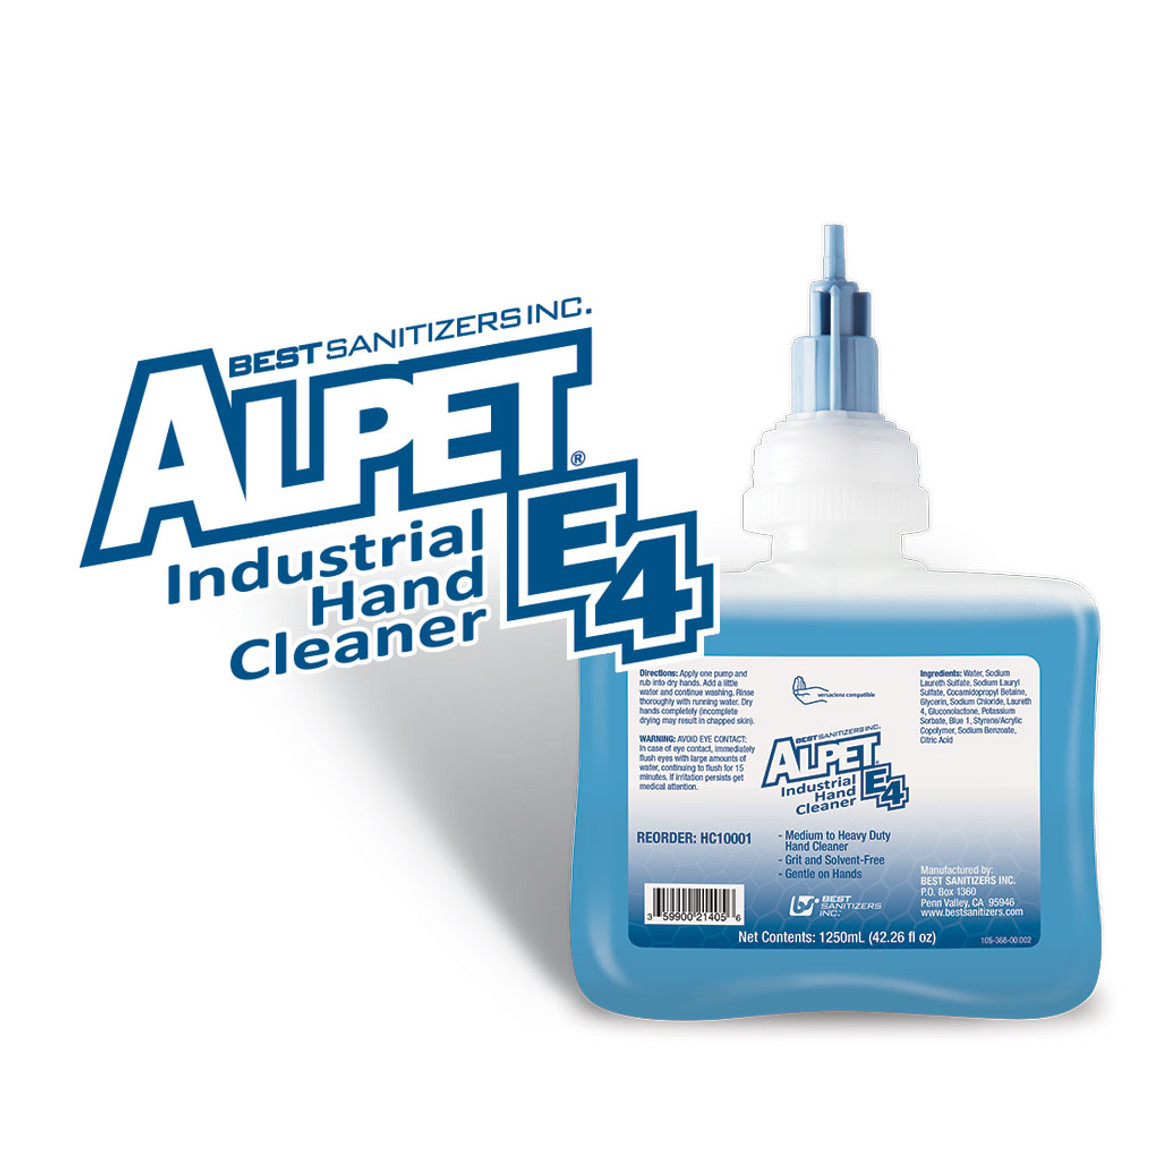 Alpet E4 Industrial Hand Cleaner 6 x 1.25 liter cartridges